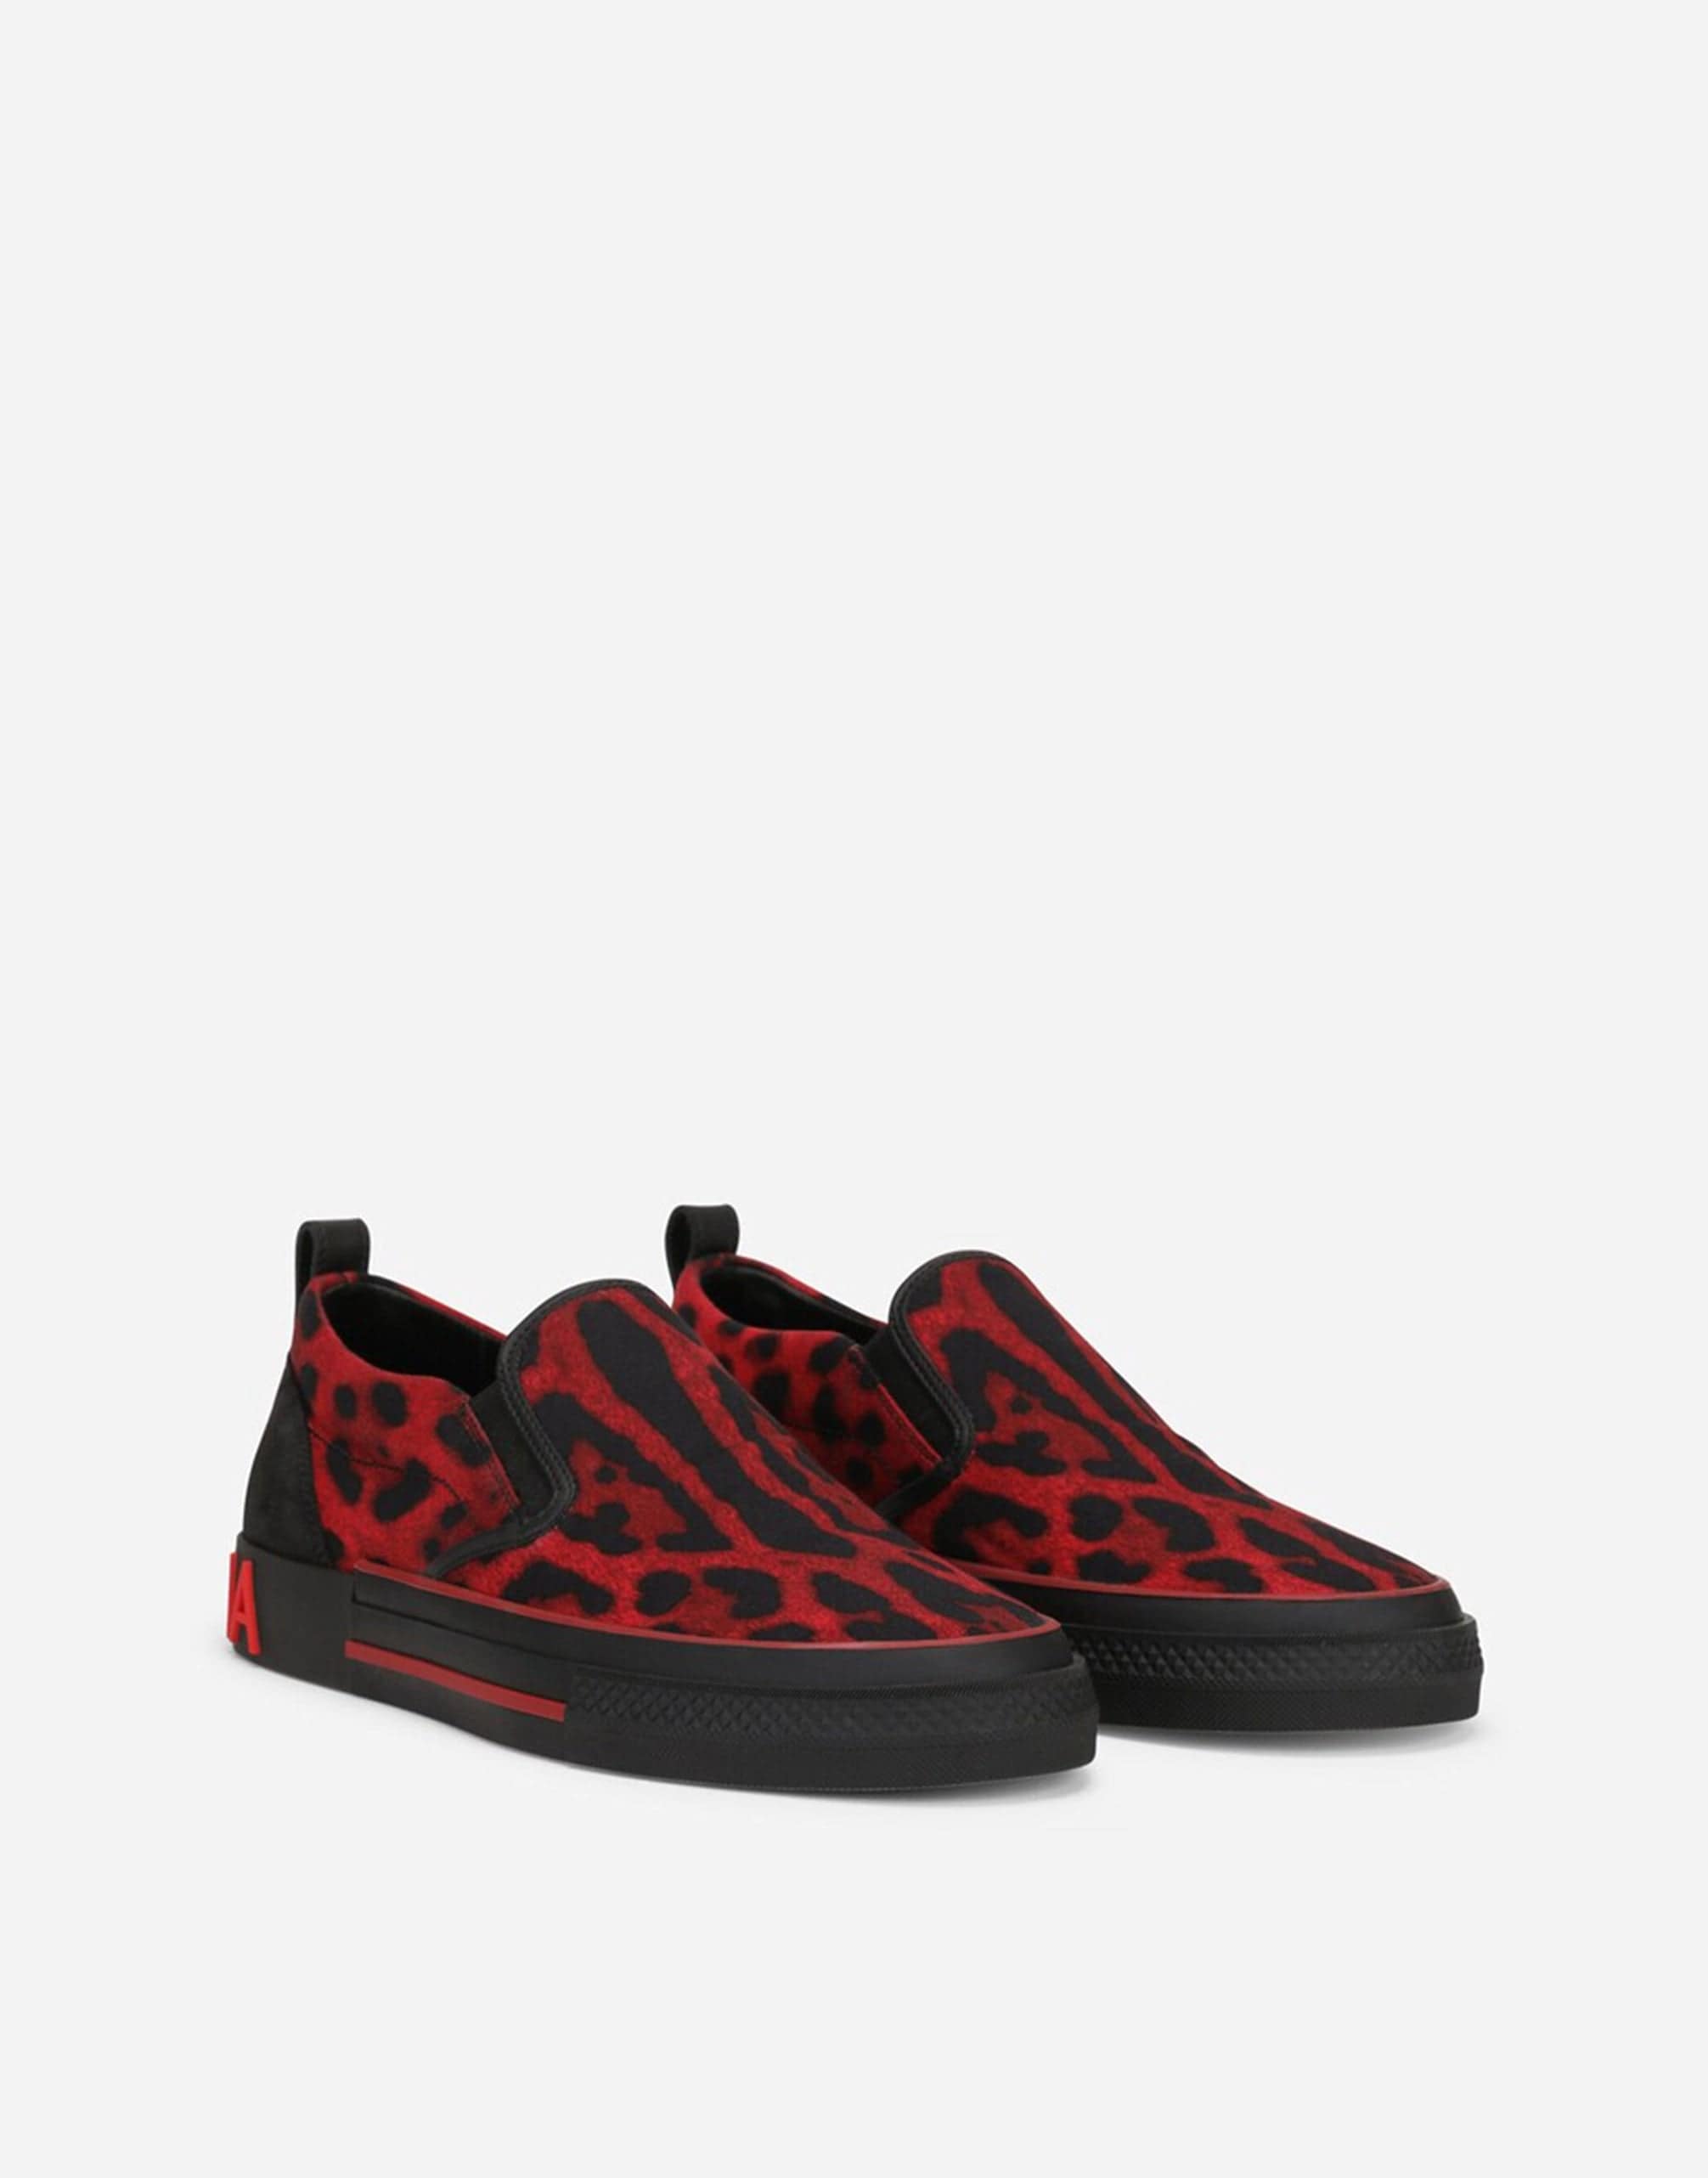 Custom 2. cero zapatillas de zapatillas en la huella de leopardo